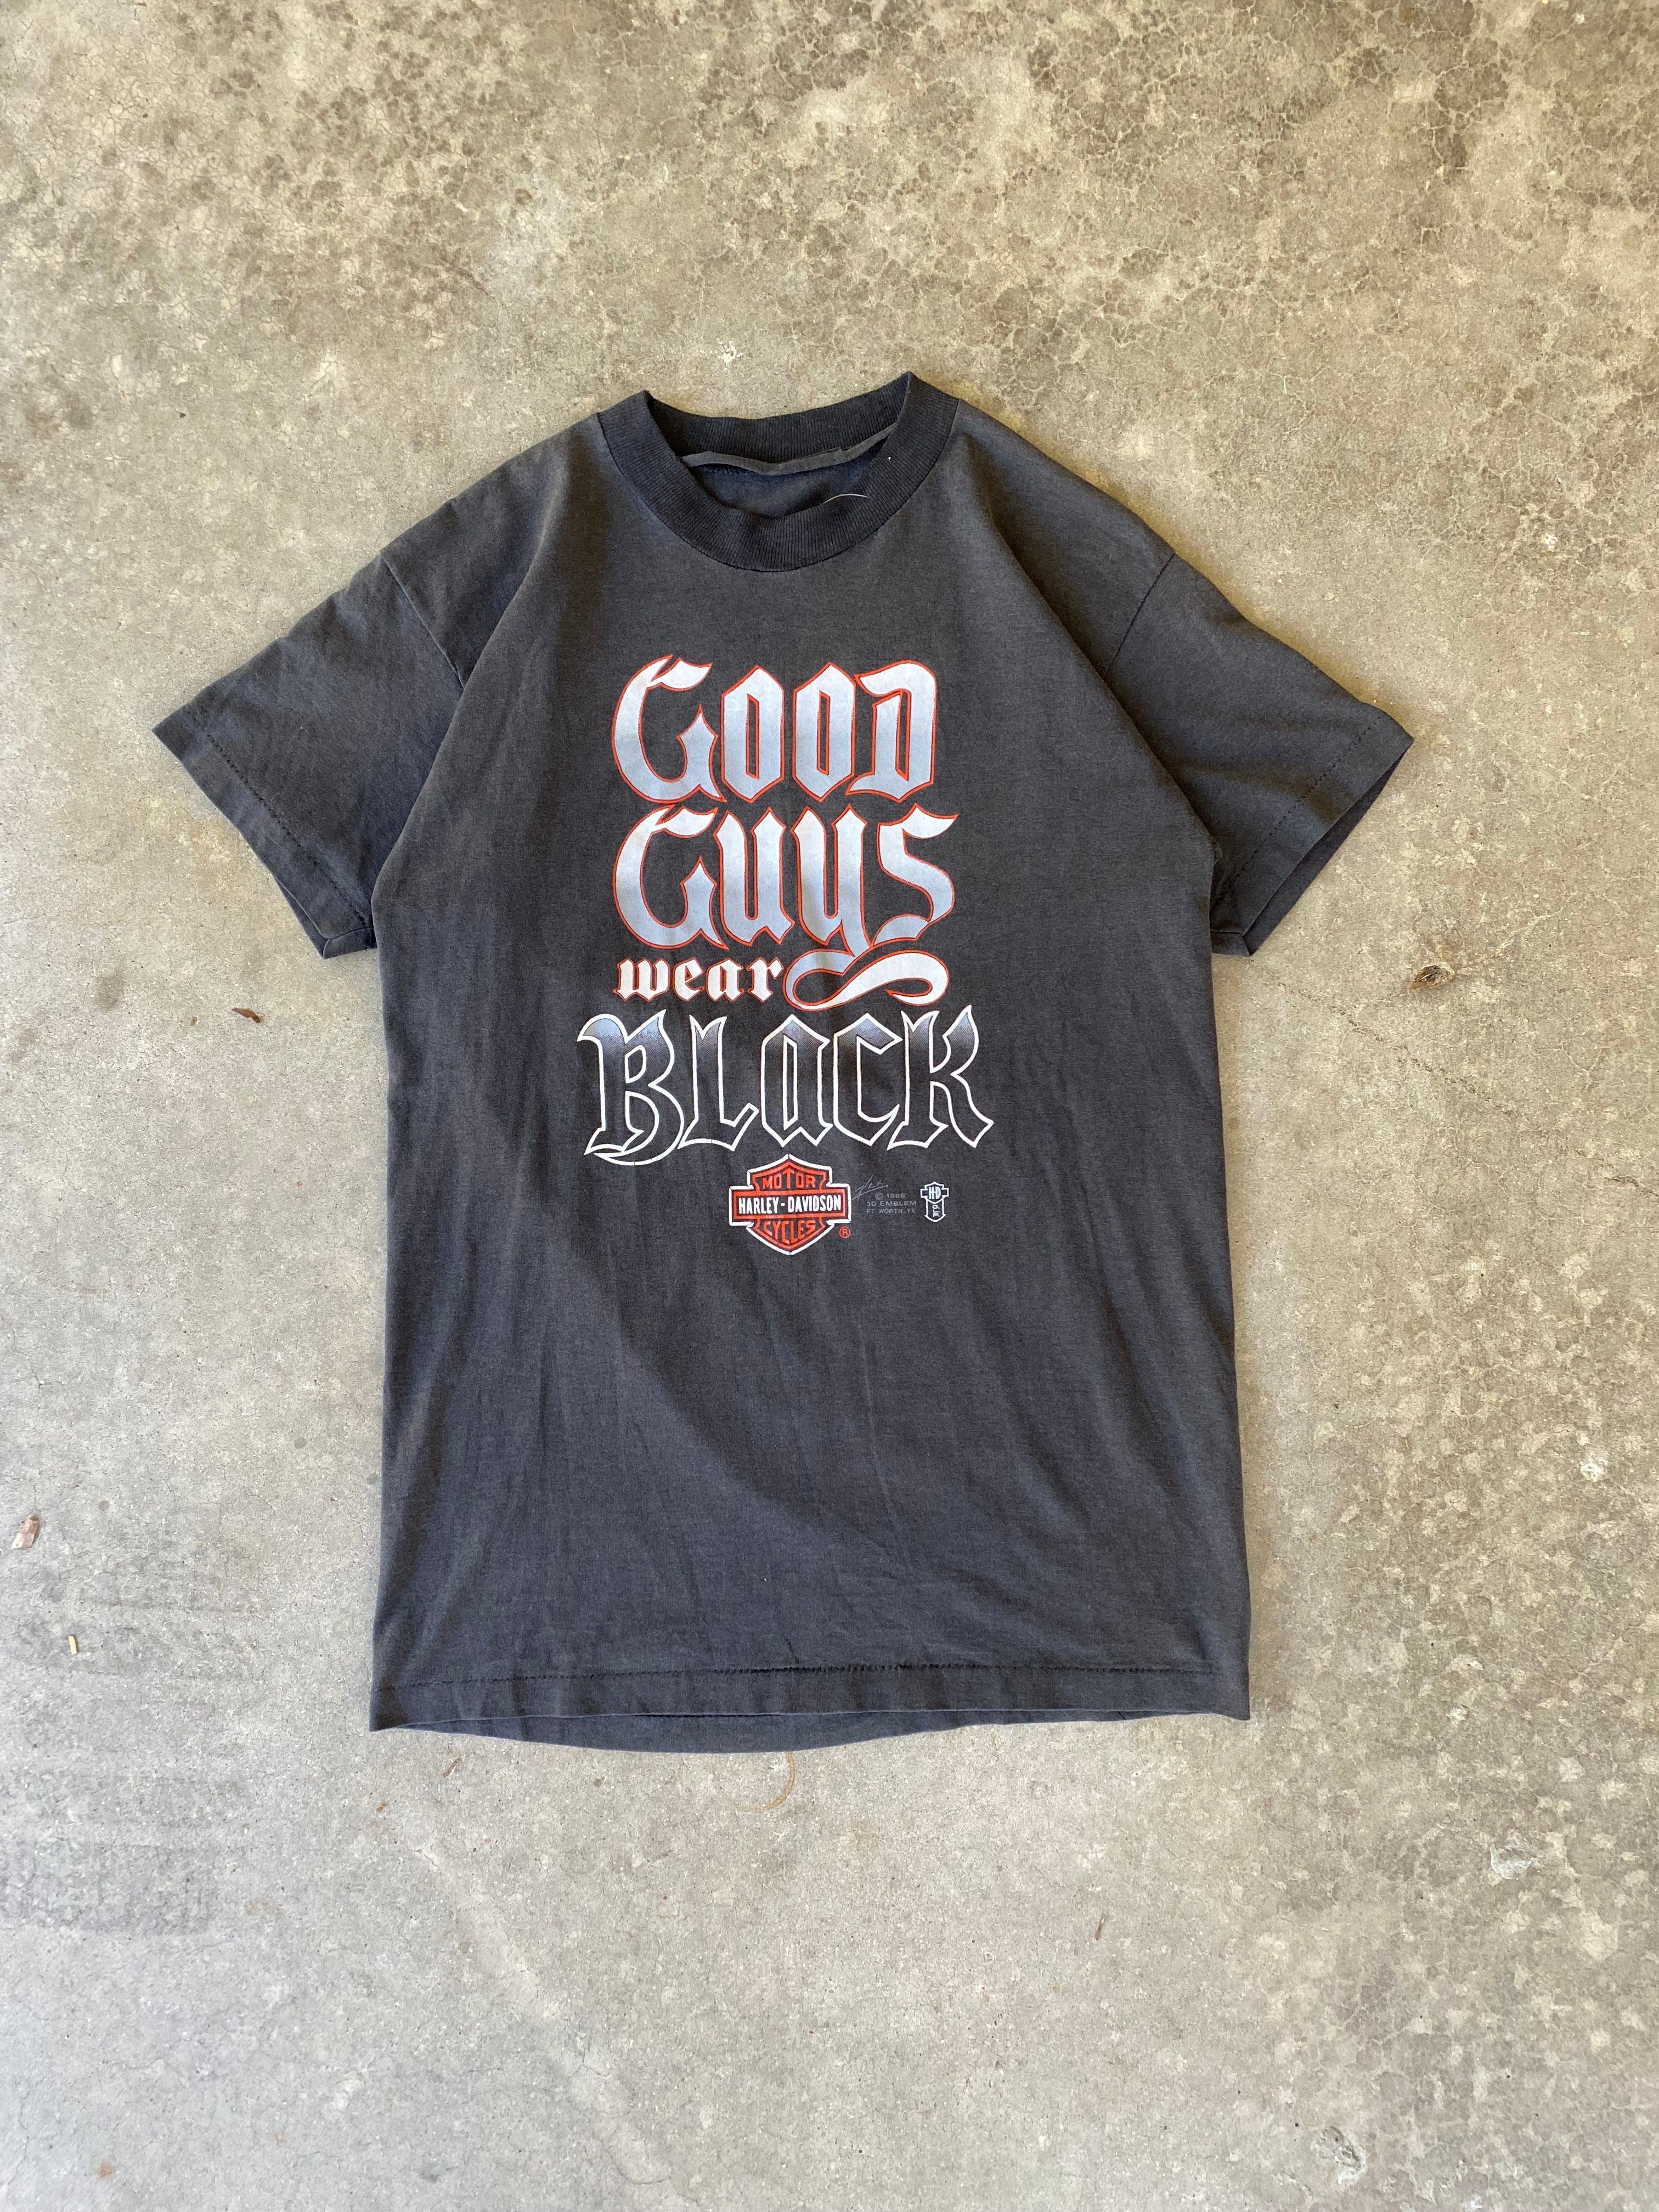 1986 Harley Davidson 3D Emblem "Good Guys Wear Black" T-Shirt (S/M)